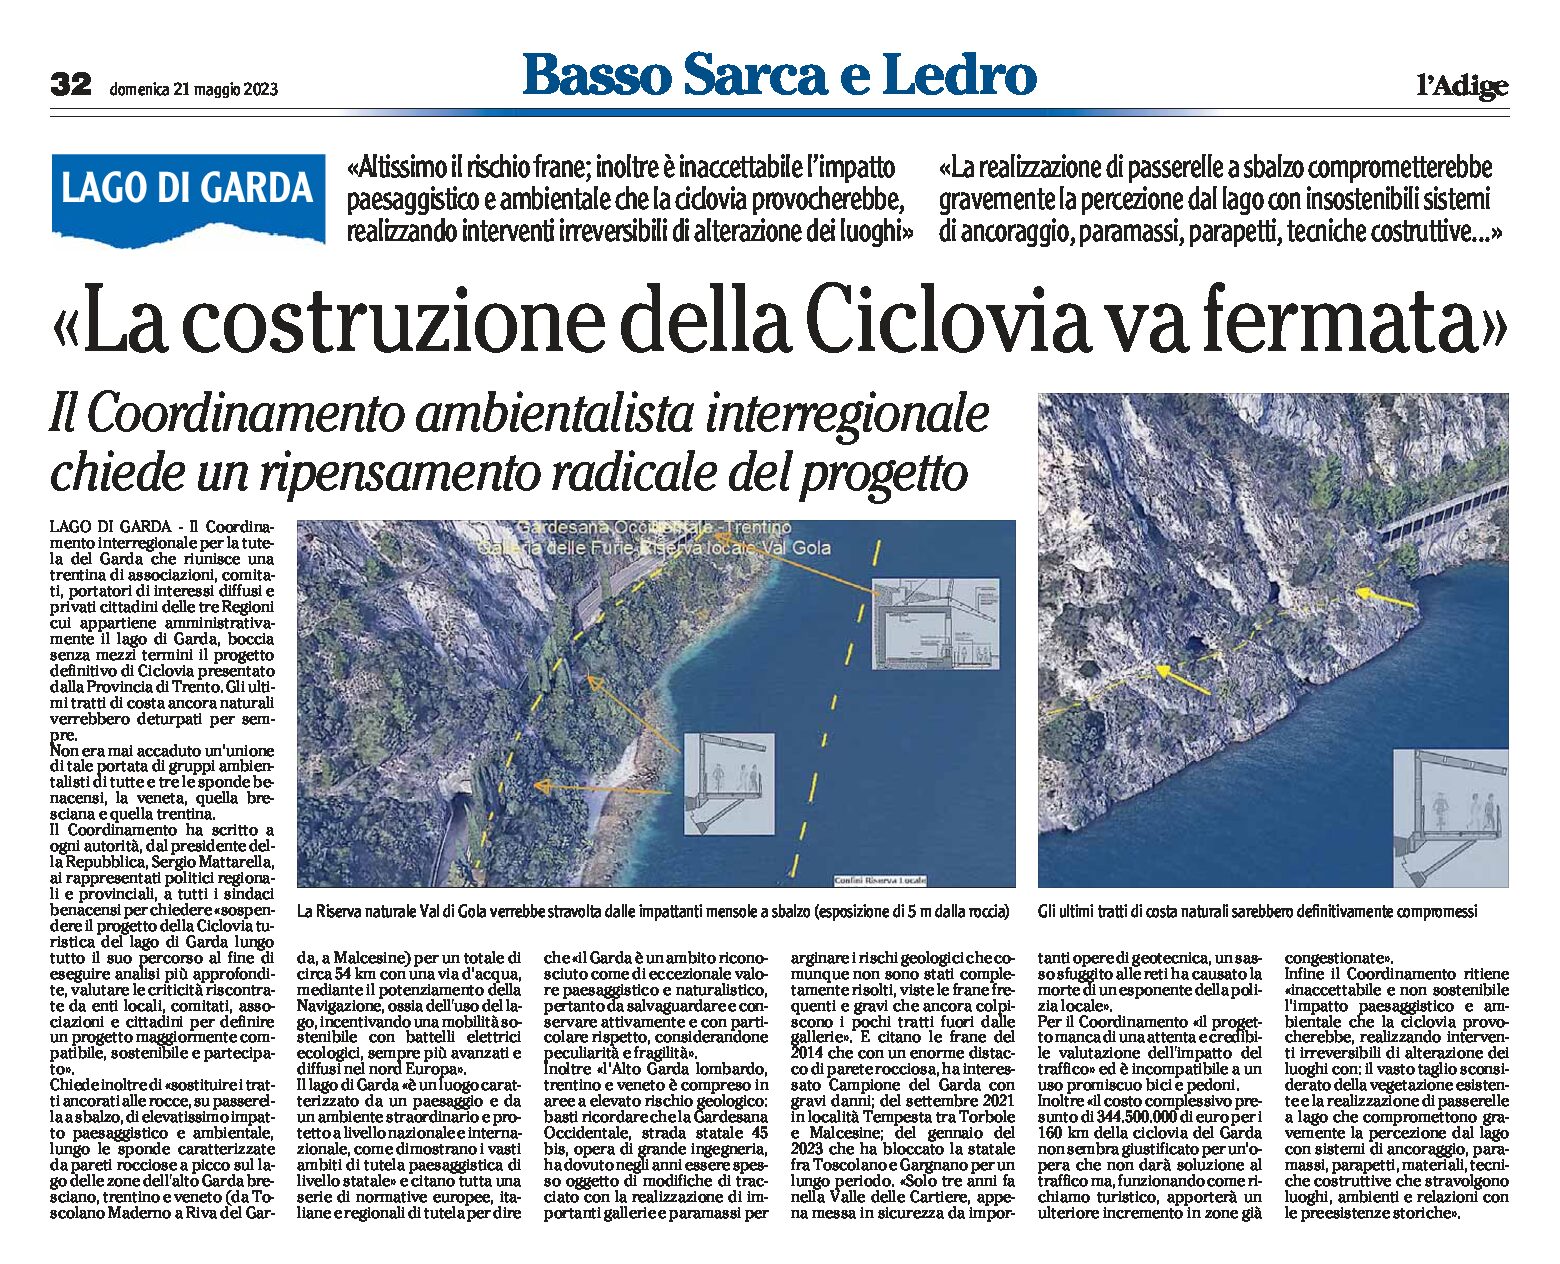 Ciclovia del Garda: il Coordinamento ambientalista interregionale boccia il progetto presentato dalla Provincia